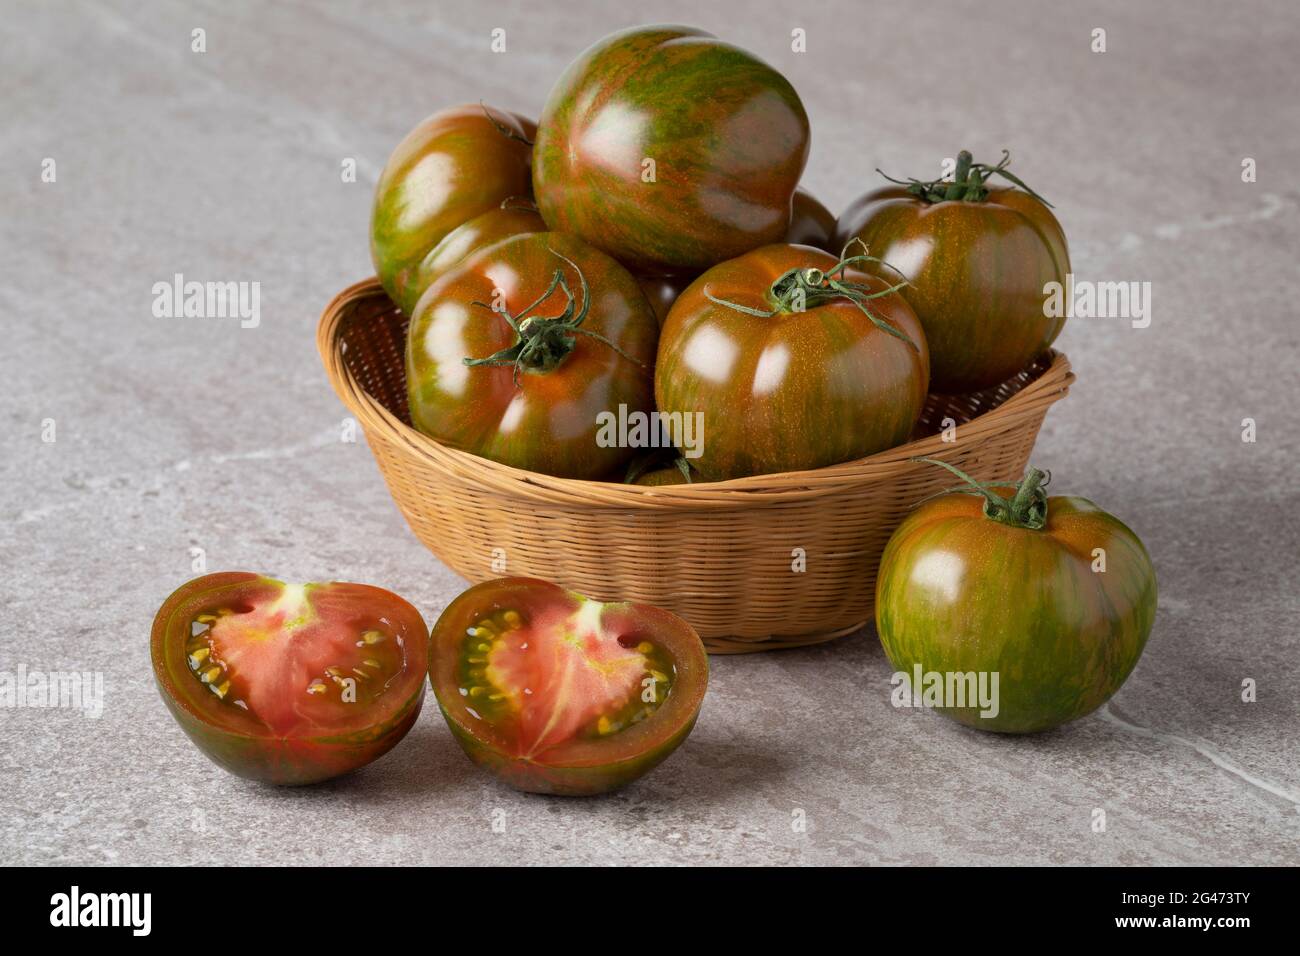 Panier avec des rayures rouges et vertes mûres entières et des tomates à moitié fraîches en gros plan Banque D'Images